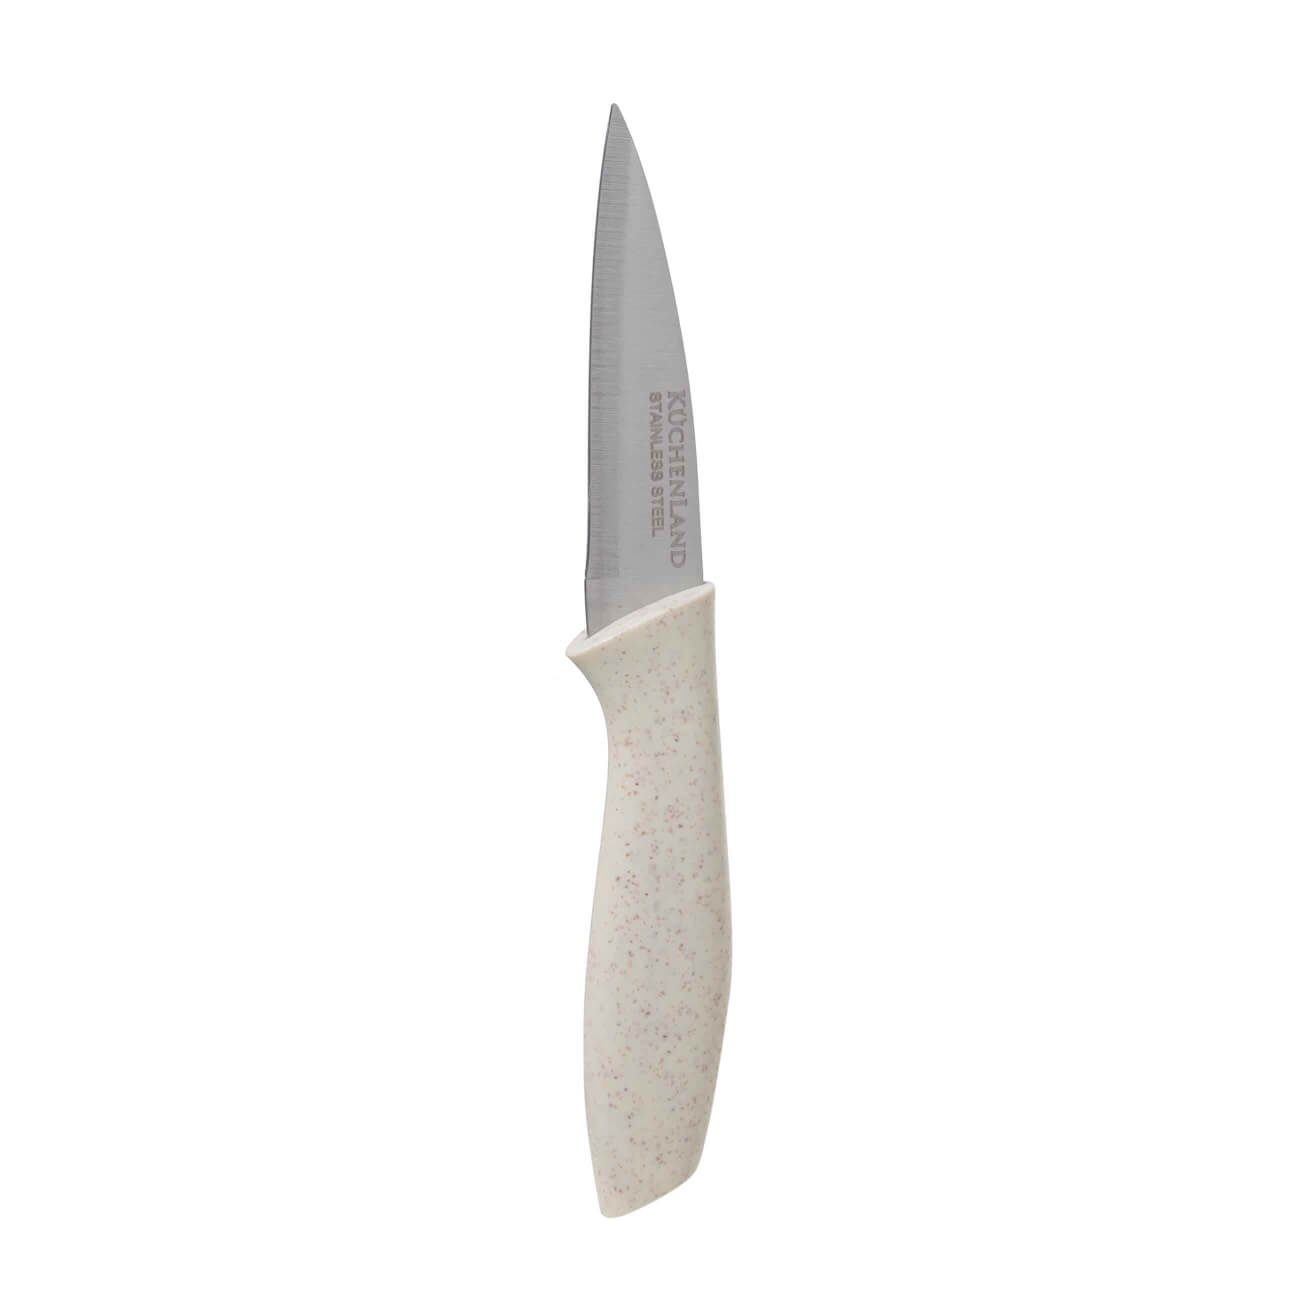 Нож для чистки овощей, 9 см, сталь/пластик, молочный, Speck-light нож для нарезки соломкой 17 см сталь пластик молочный regular